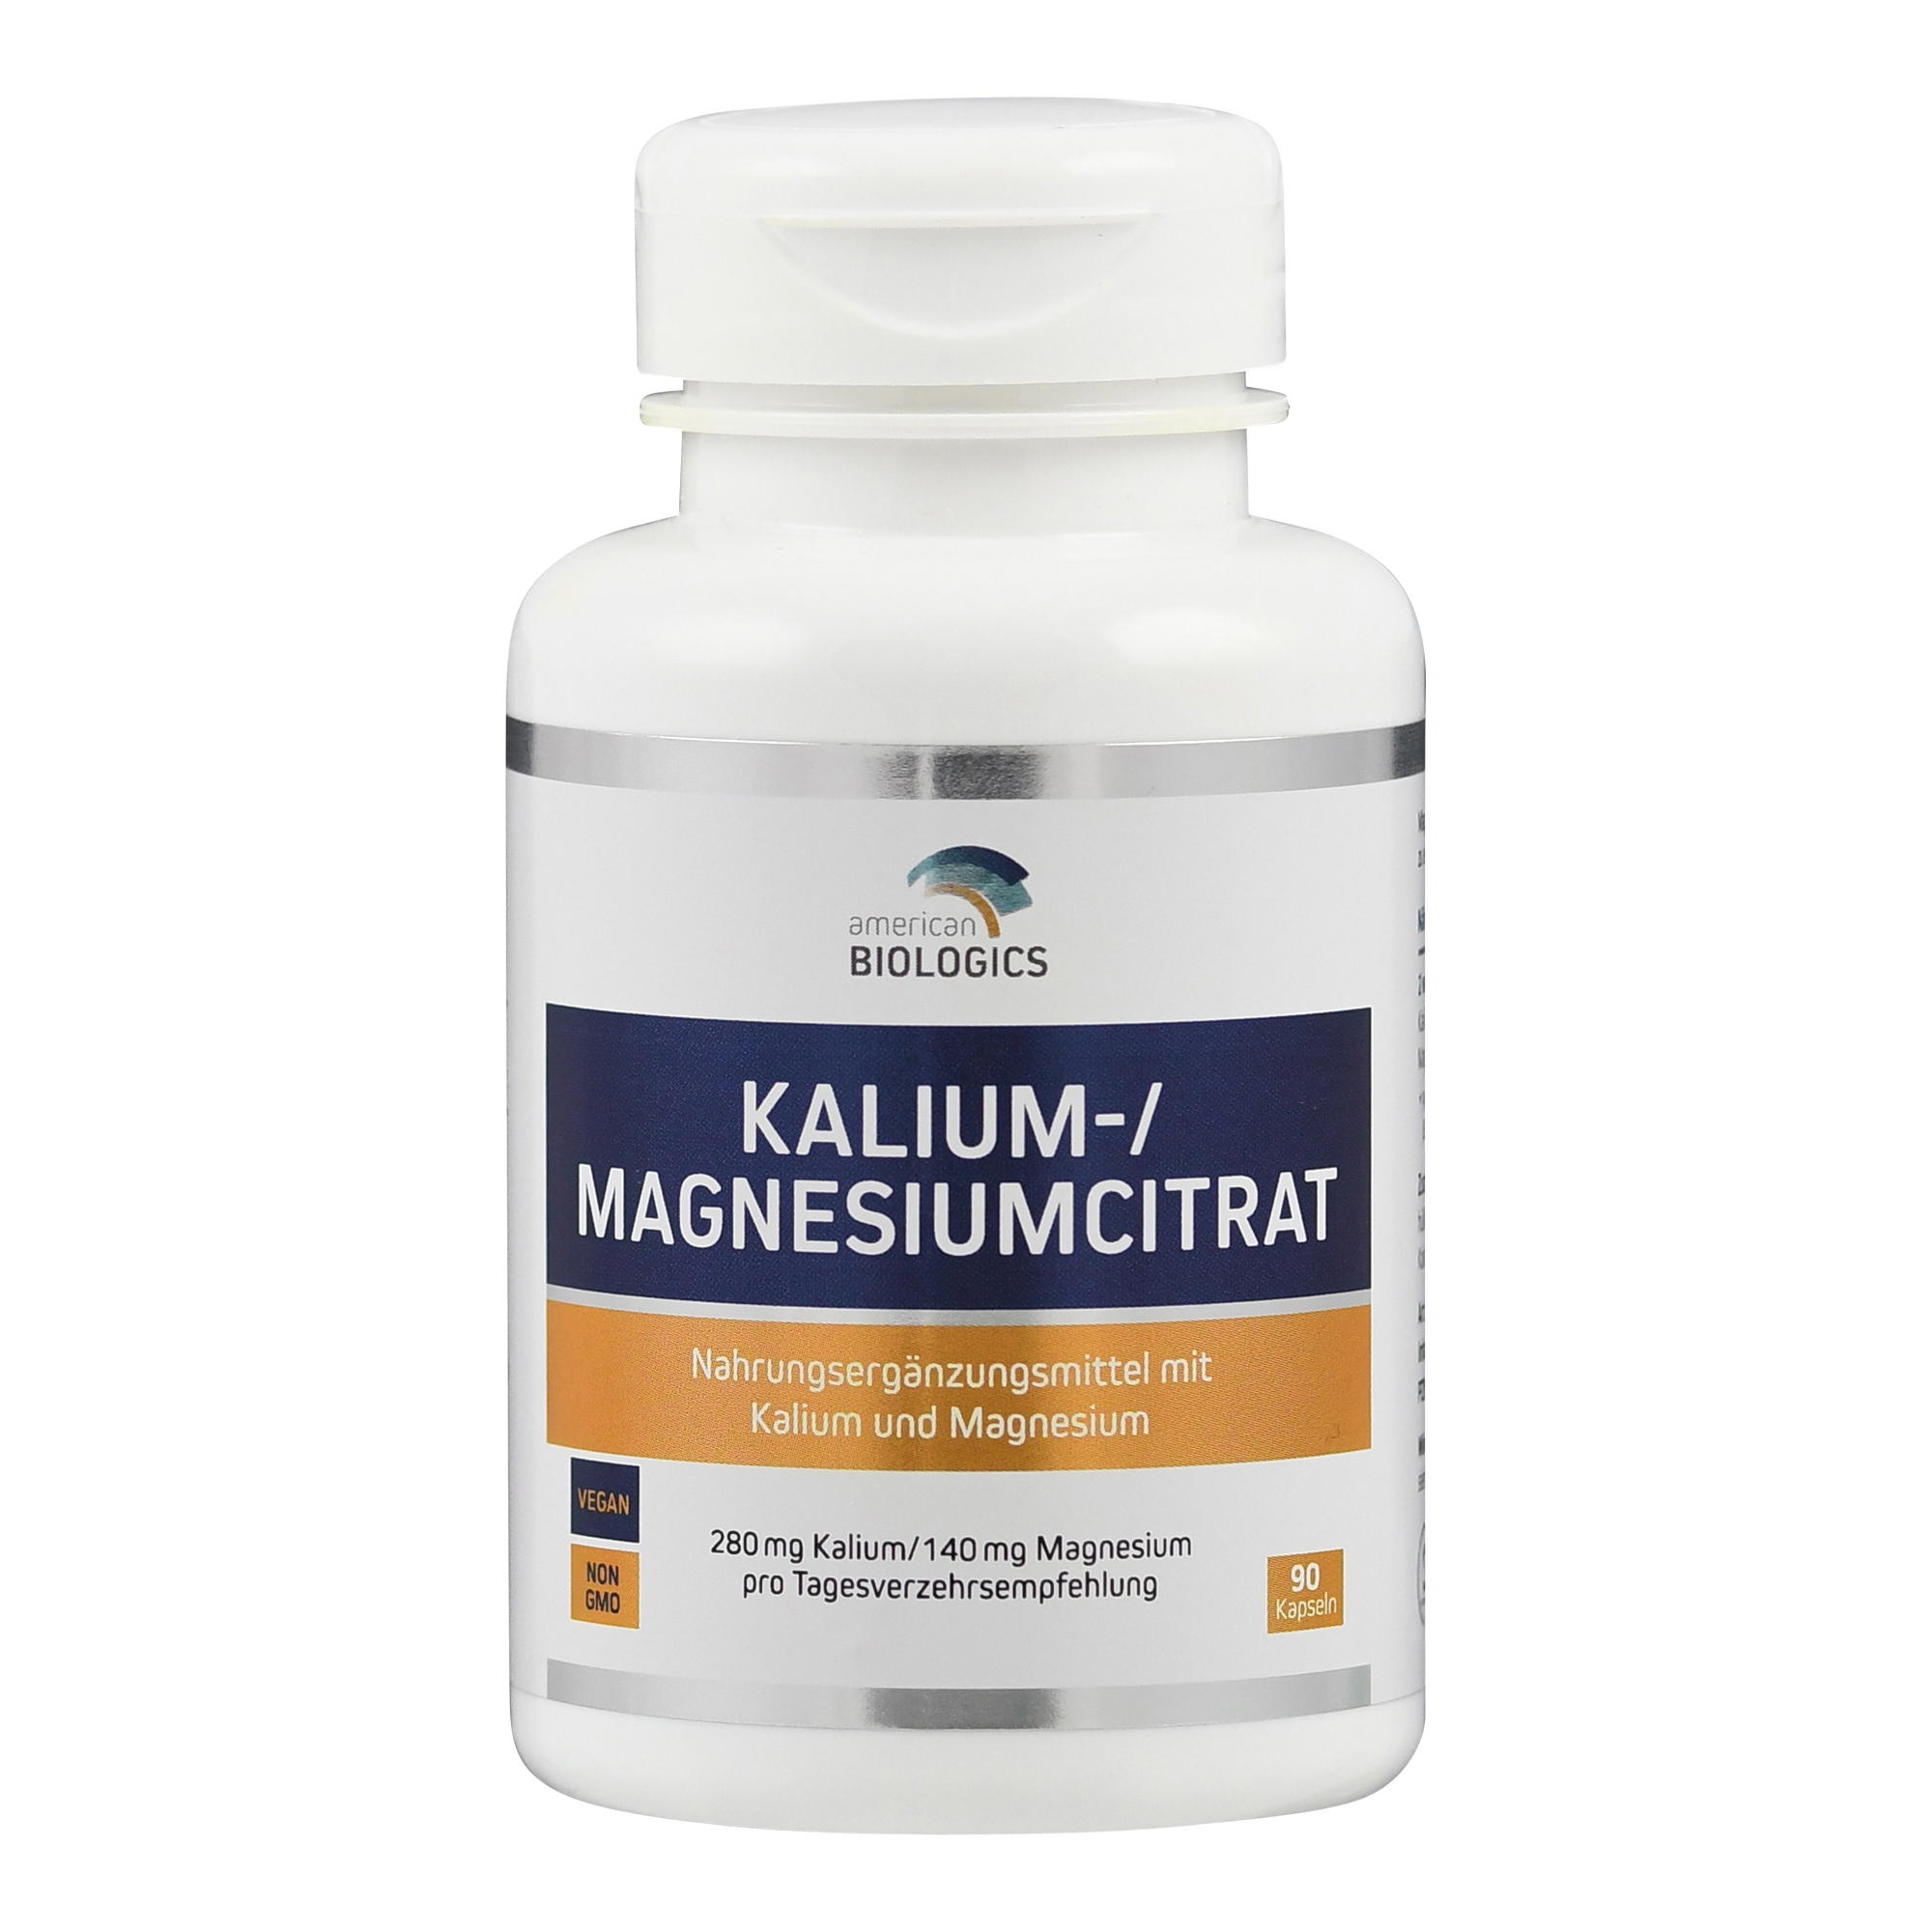 Kalium-/Magnesiumcitrat